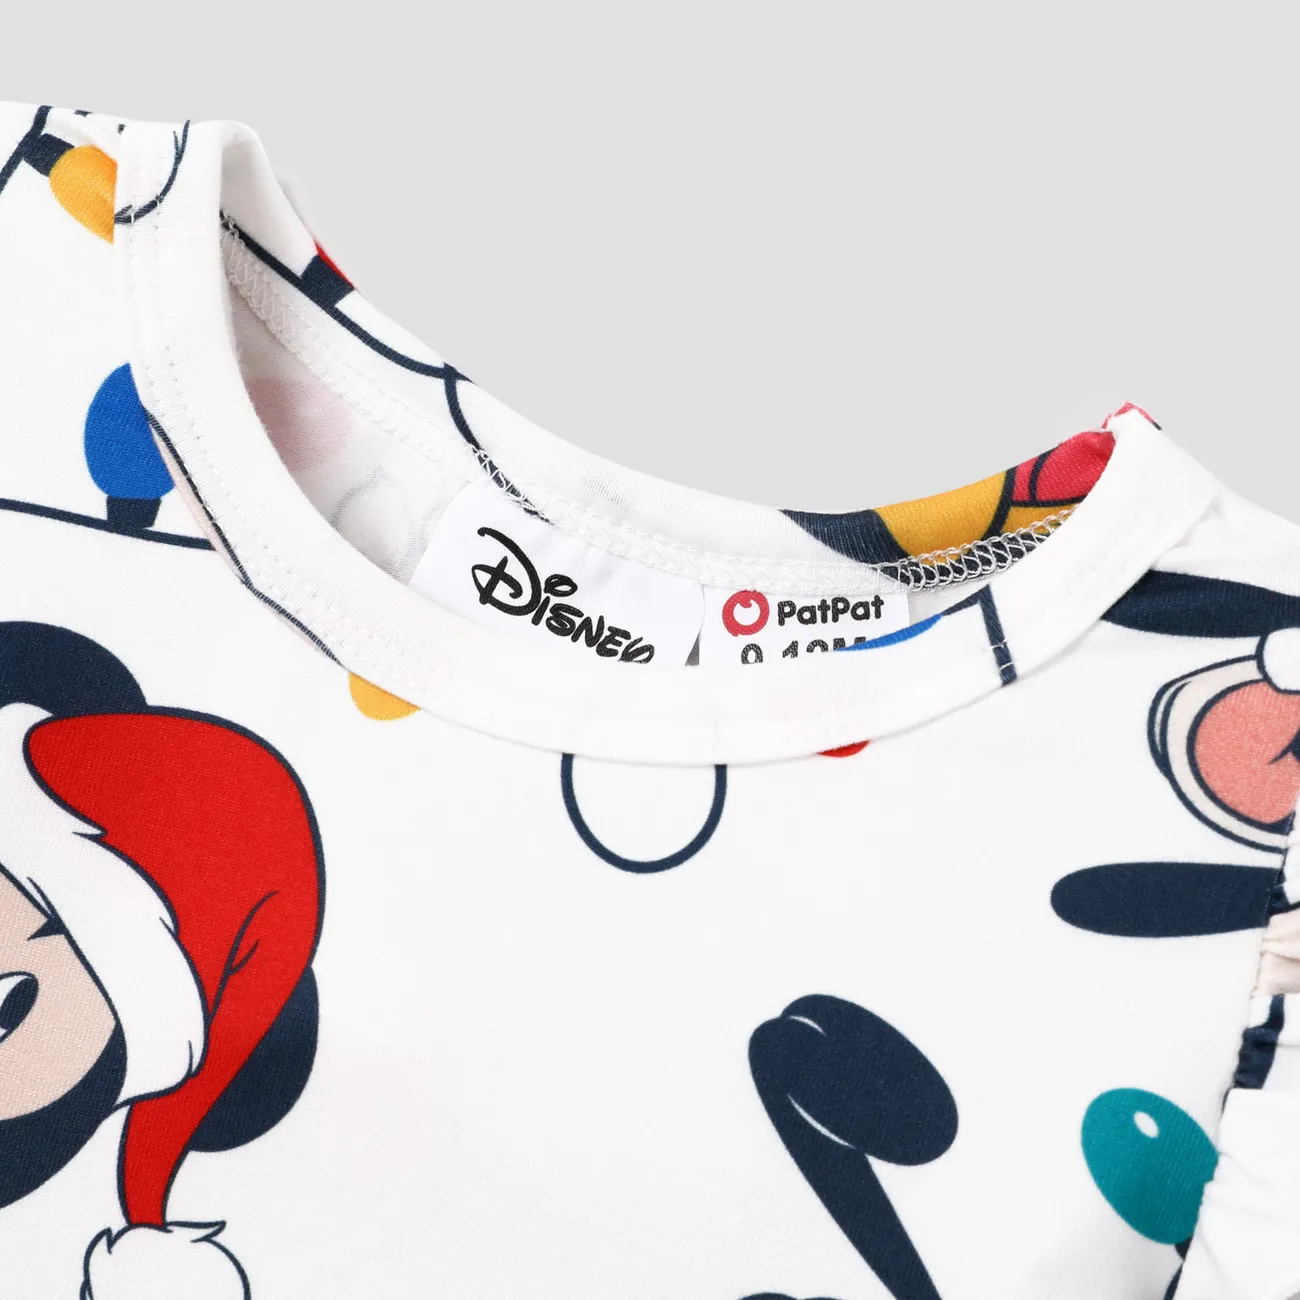 Disney Mickey and Friends Weihnachten 2 Stück IP Mädchen Borte Kindlich Kleider rot big image 1